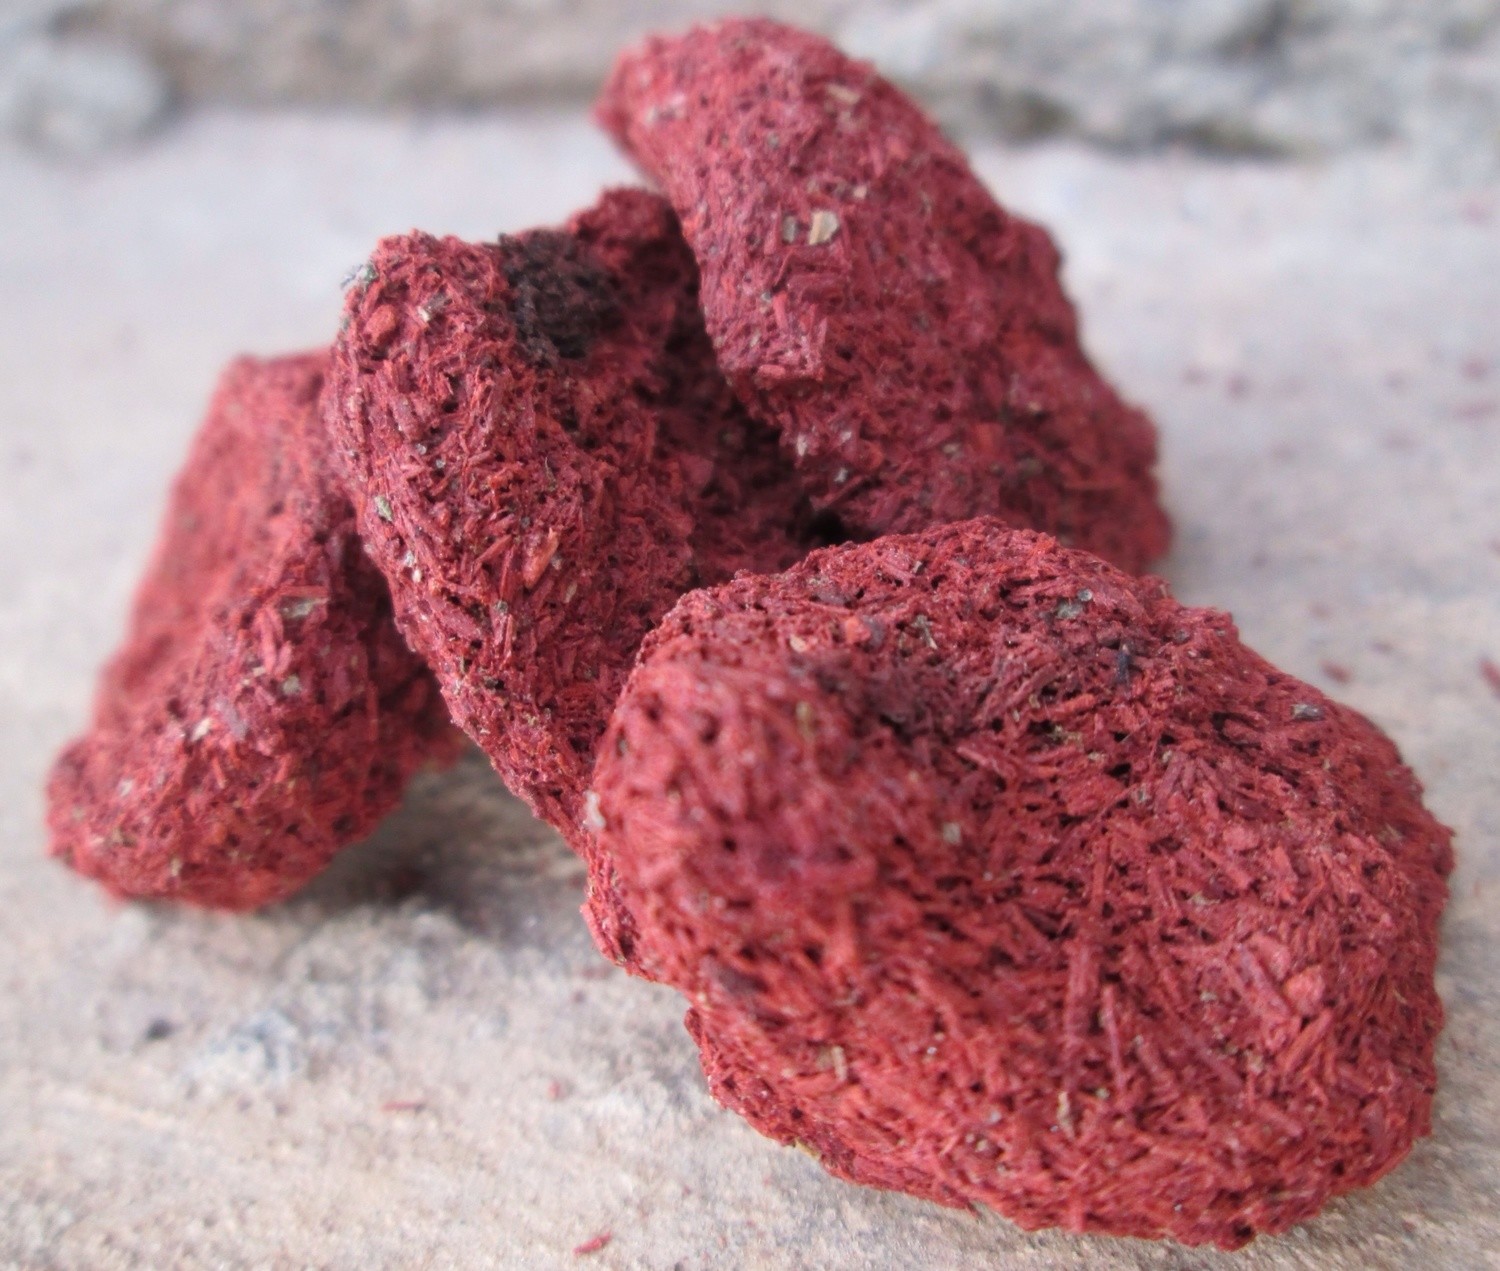 Osun - Red Camwood, Size: Small (1/4 pound)